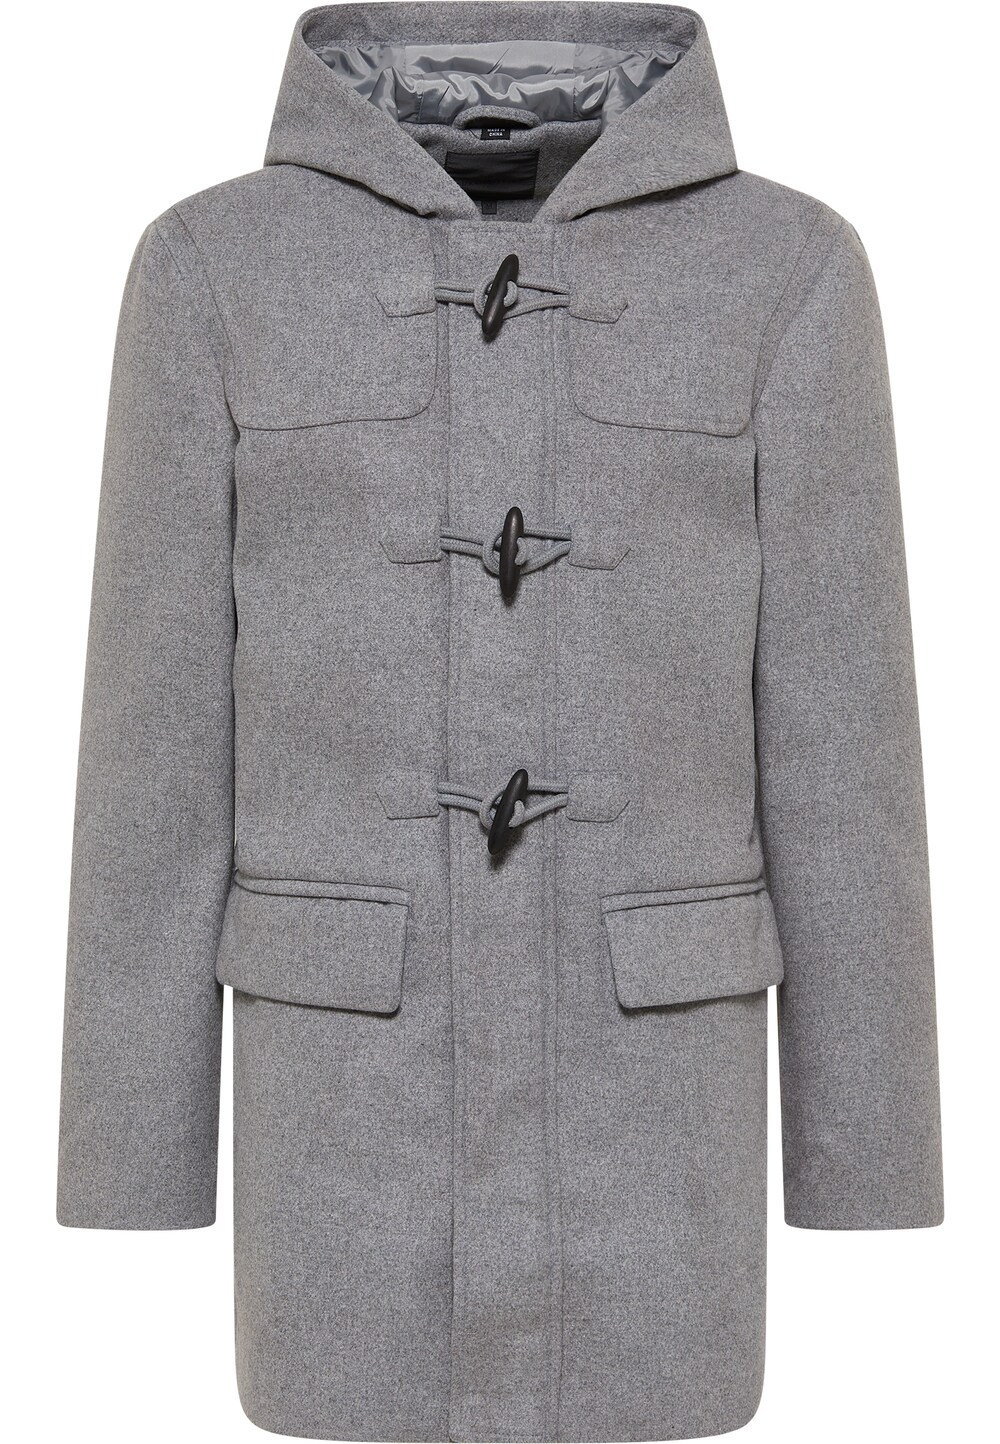 Межсезонное пальто DreiMaster Klassik, пестрый серый межсезонное пальто dreimaster klassik ночной синий